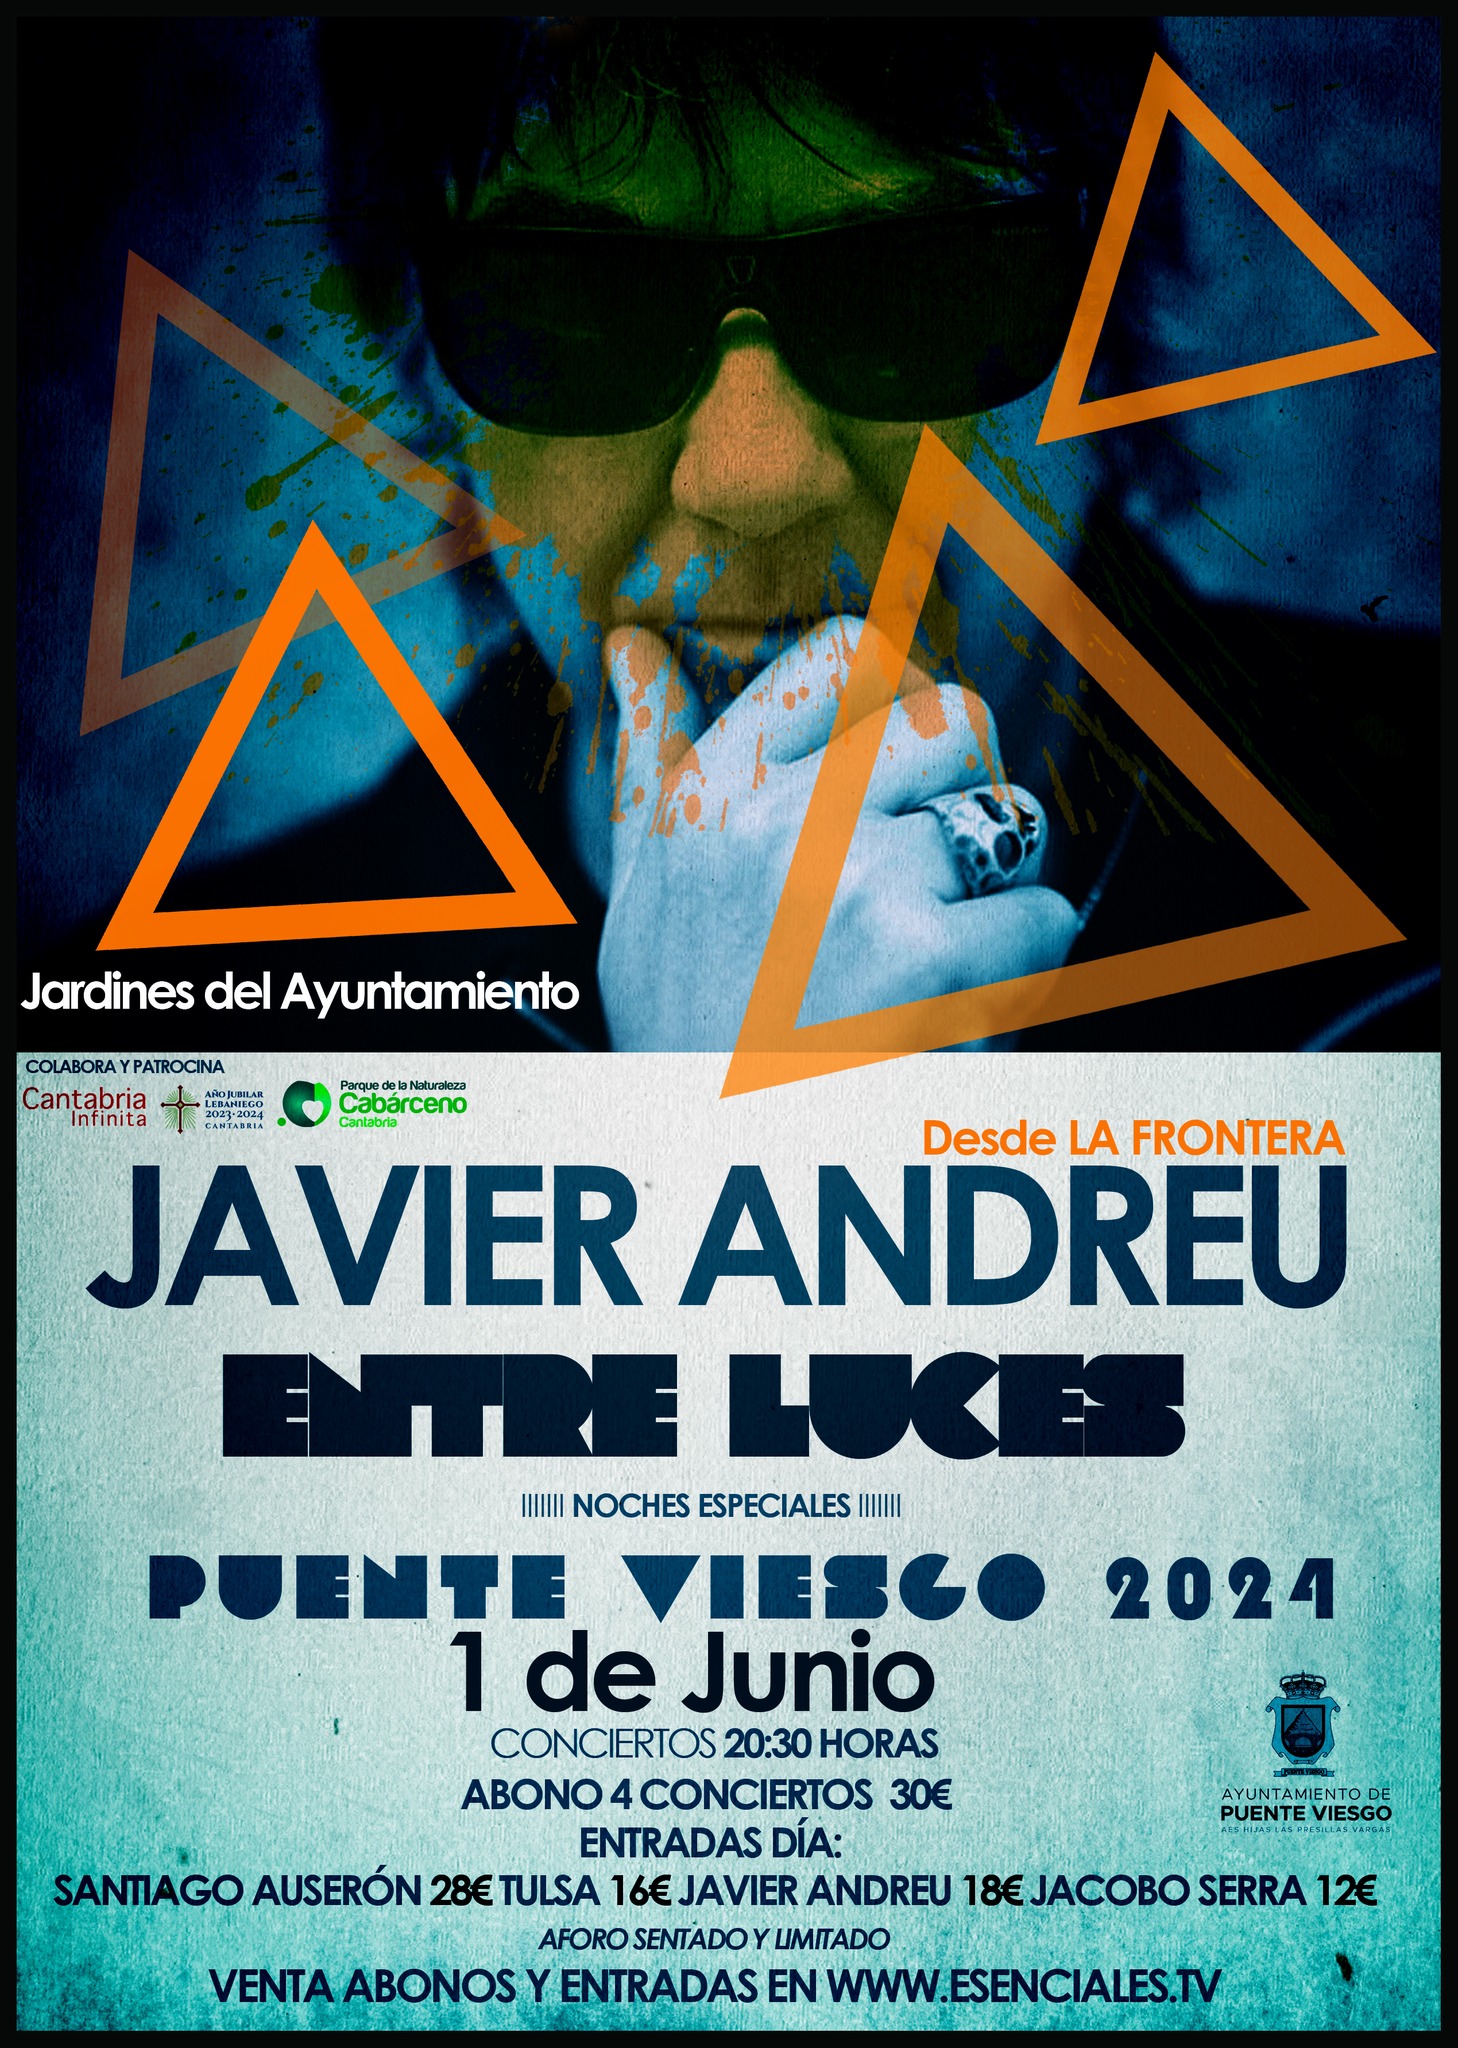 Entre luces: Javier Andreu (La Frontera) en Santander - Cantabria - Mutick